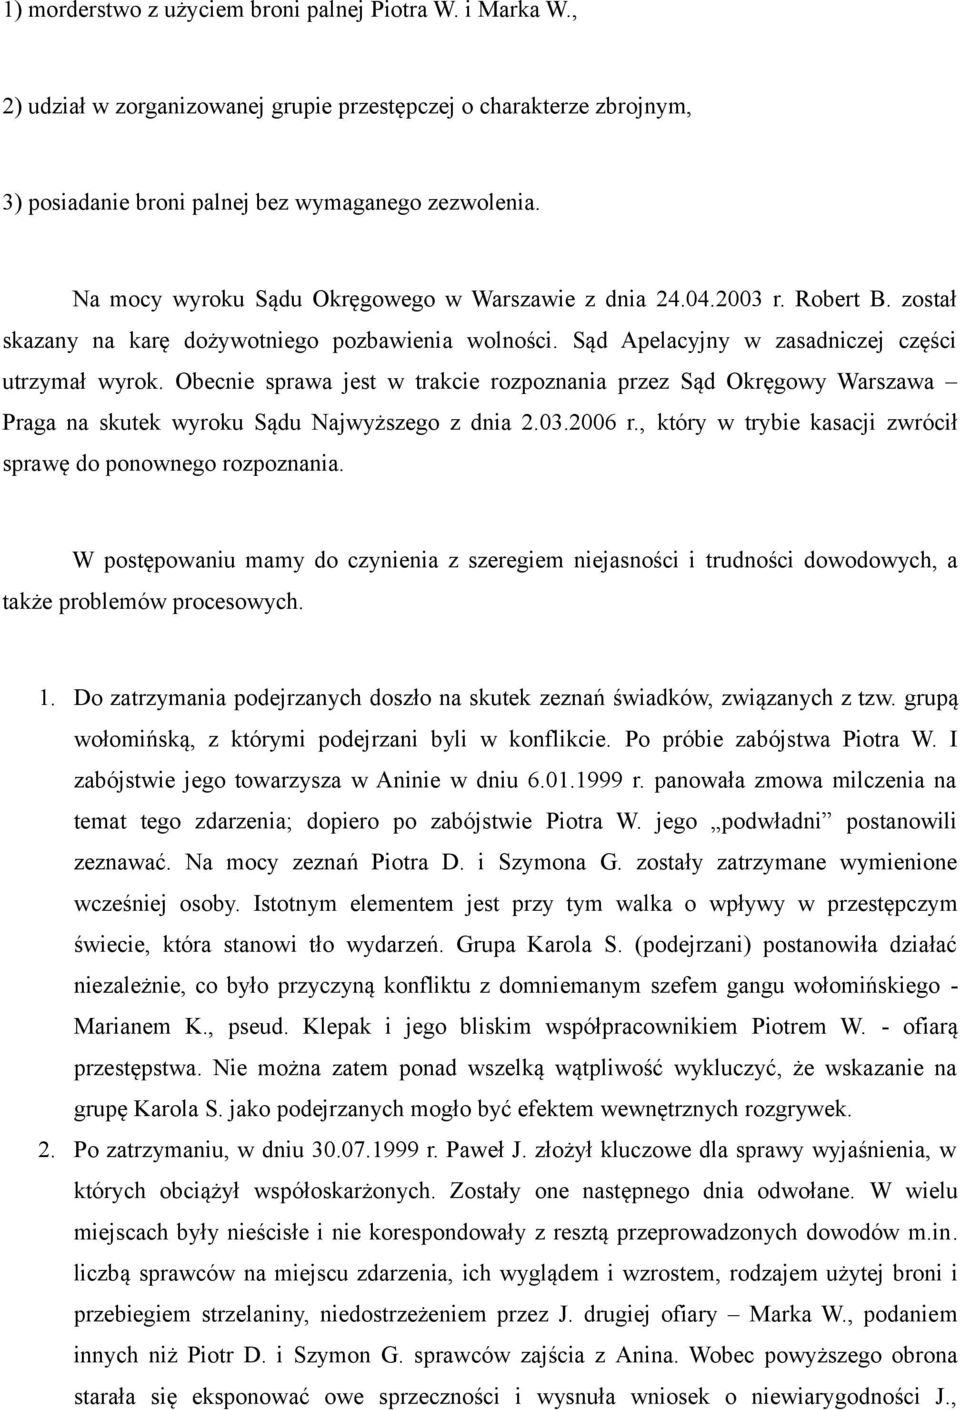 Obecnie sprawa jest w trakcie rozpoznania przez Sąd Okręgowy Warszawa Praga na skutek wyroku Sądu Najwyższego z dnia 2.03.2006 r., który w trybie kasacji zwrócił sprawę do ponownego rozpoznania.